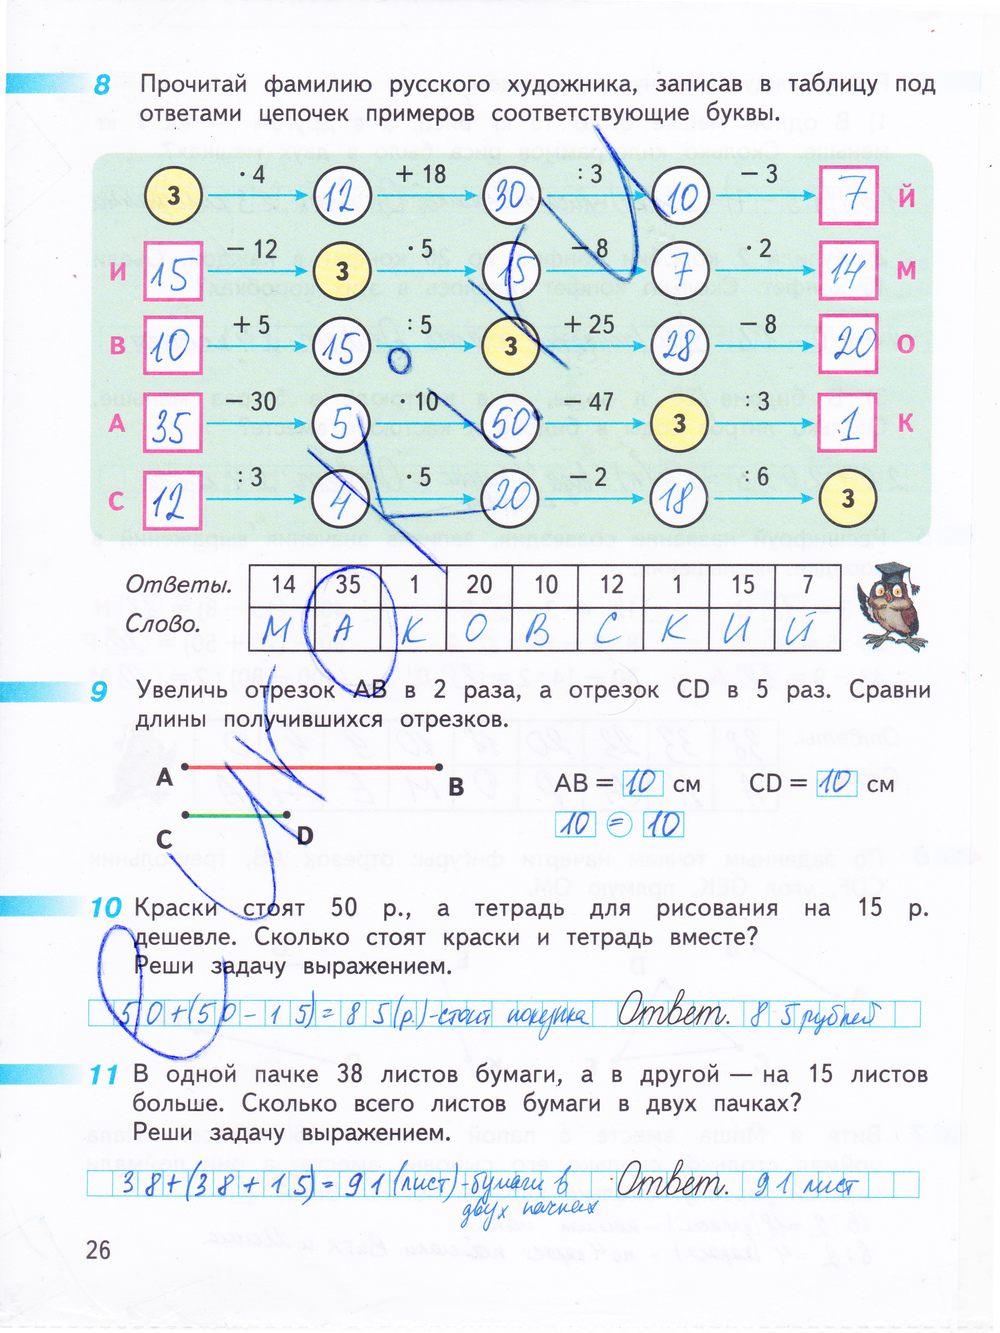 Гдз математика сборник задании11 классдорофеев